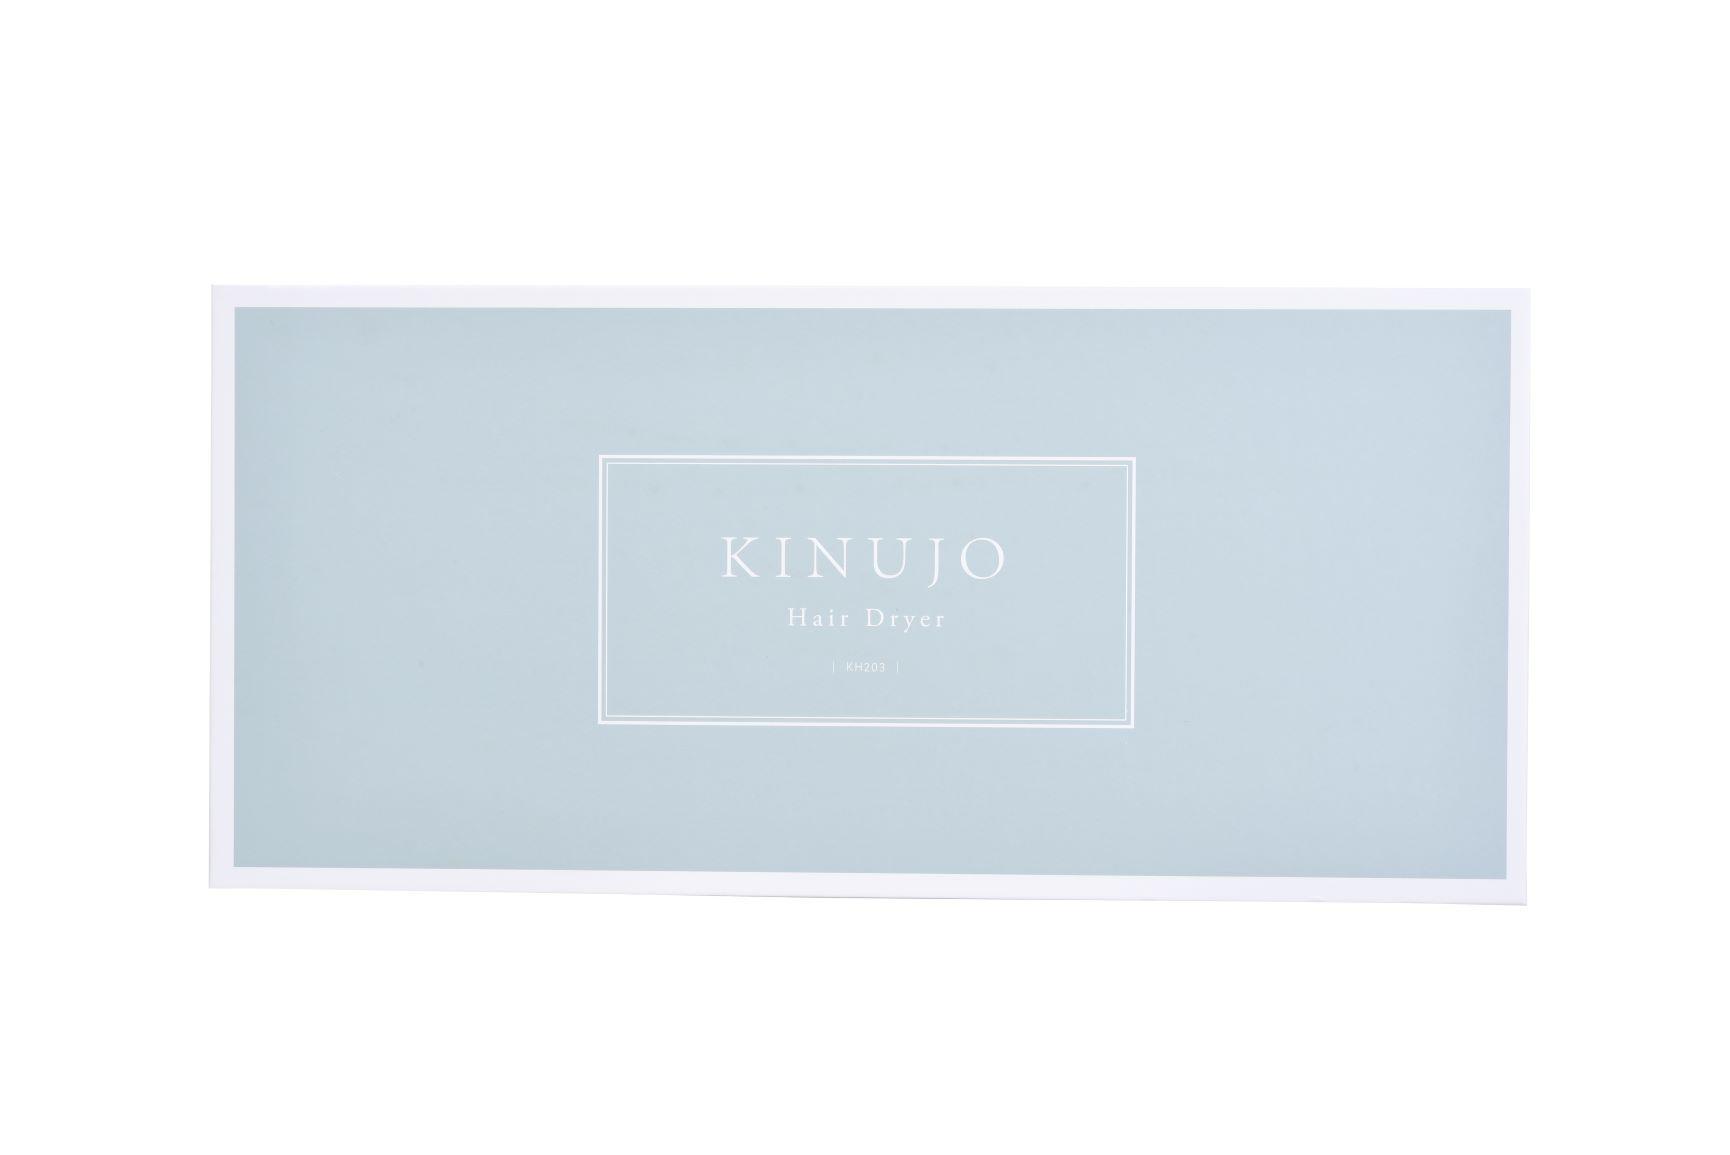 【限定カラー】KINUJO(キヌージョ) Hair Dryer(ヘアドライヤー) ペールブルー